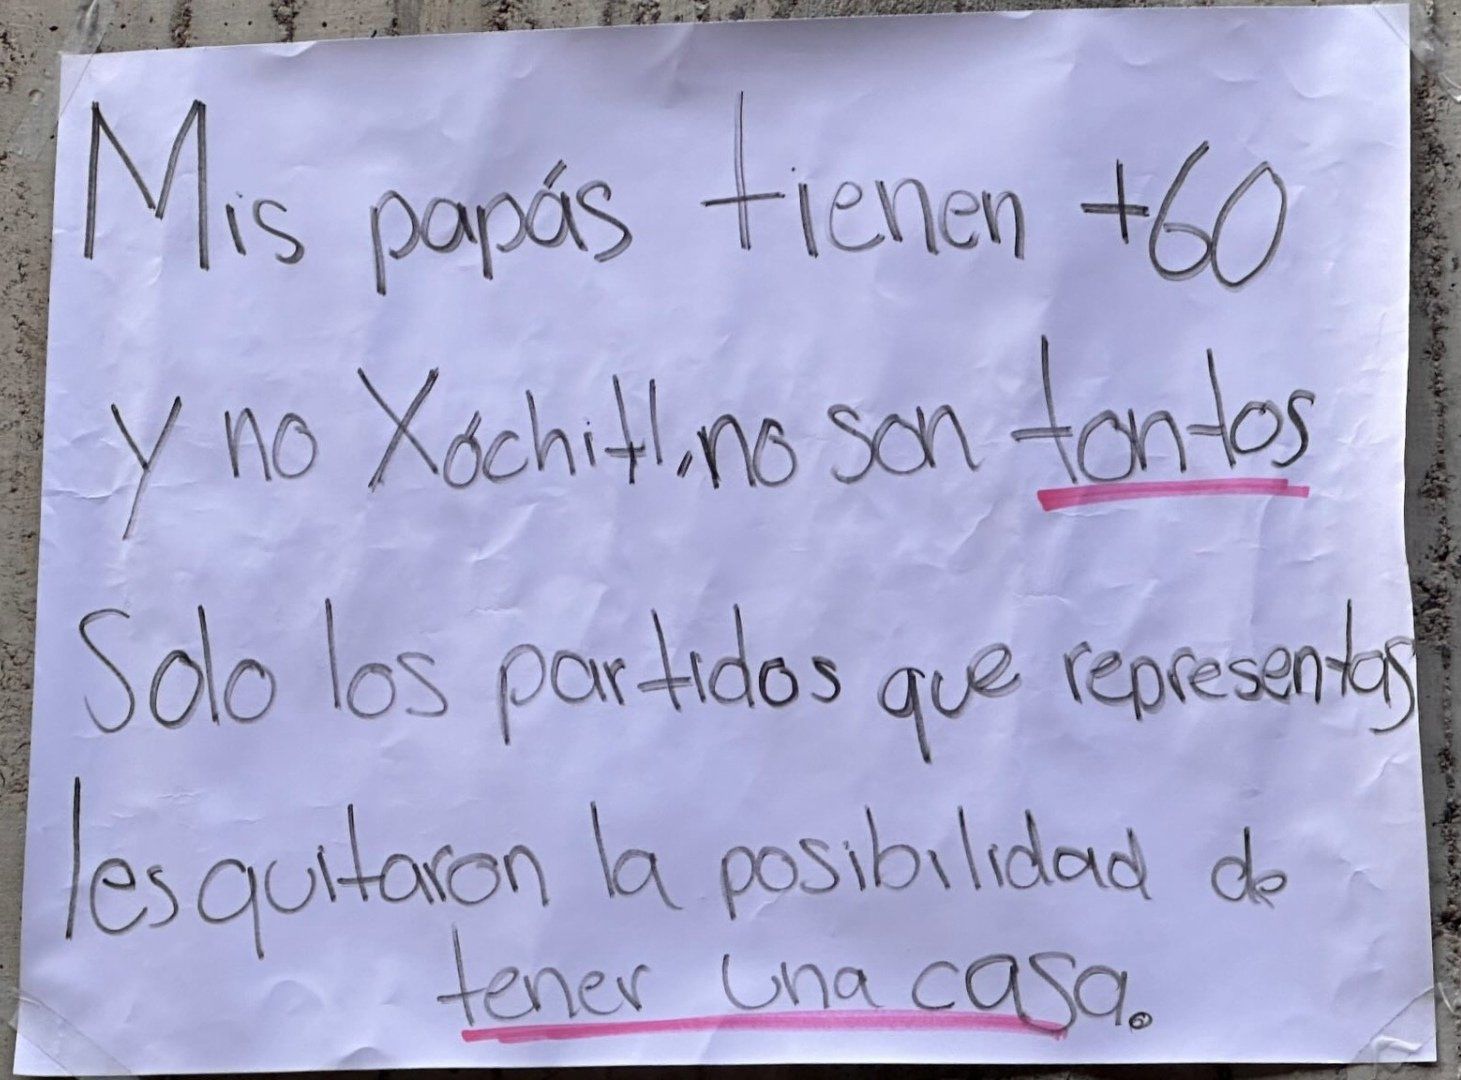 Universitaros reciben a Xóchitl con carteles de rechazo